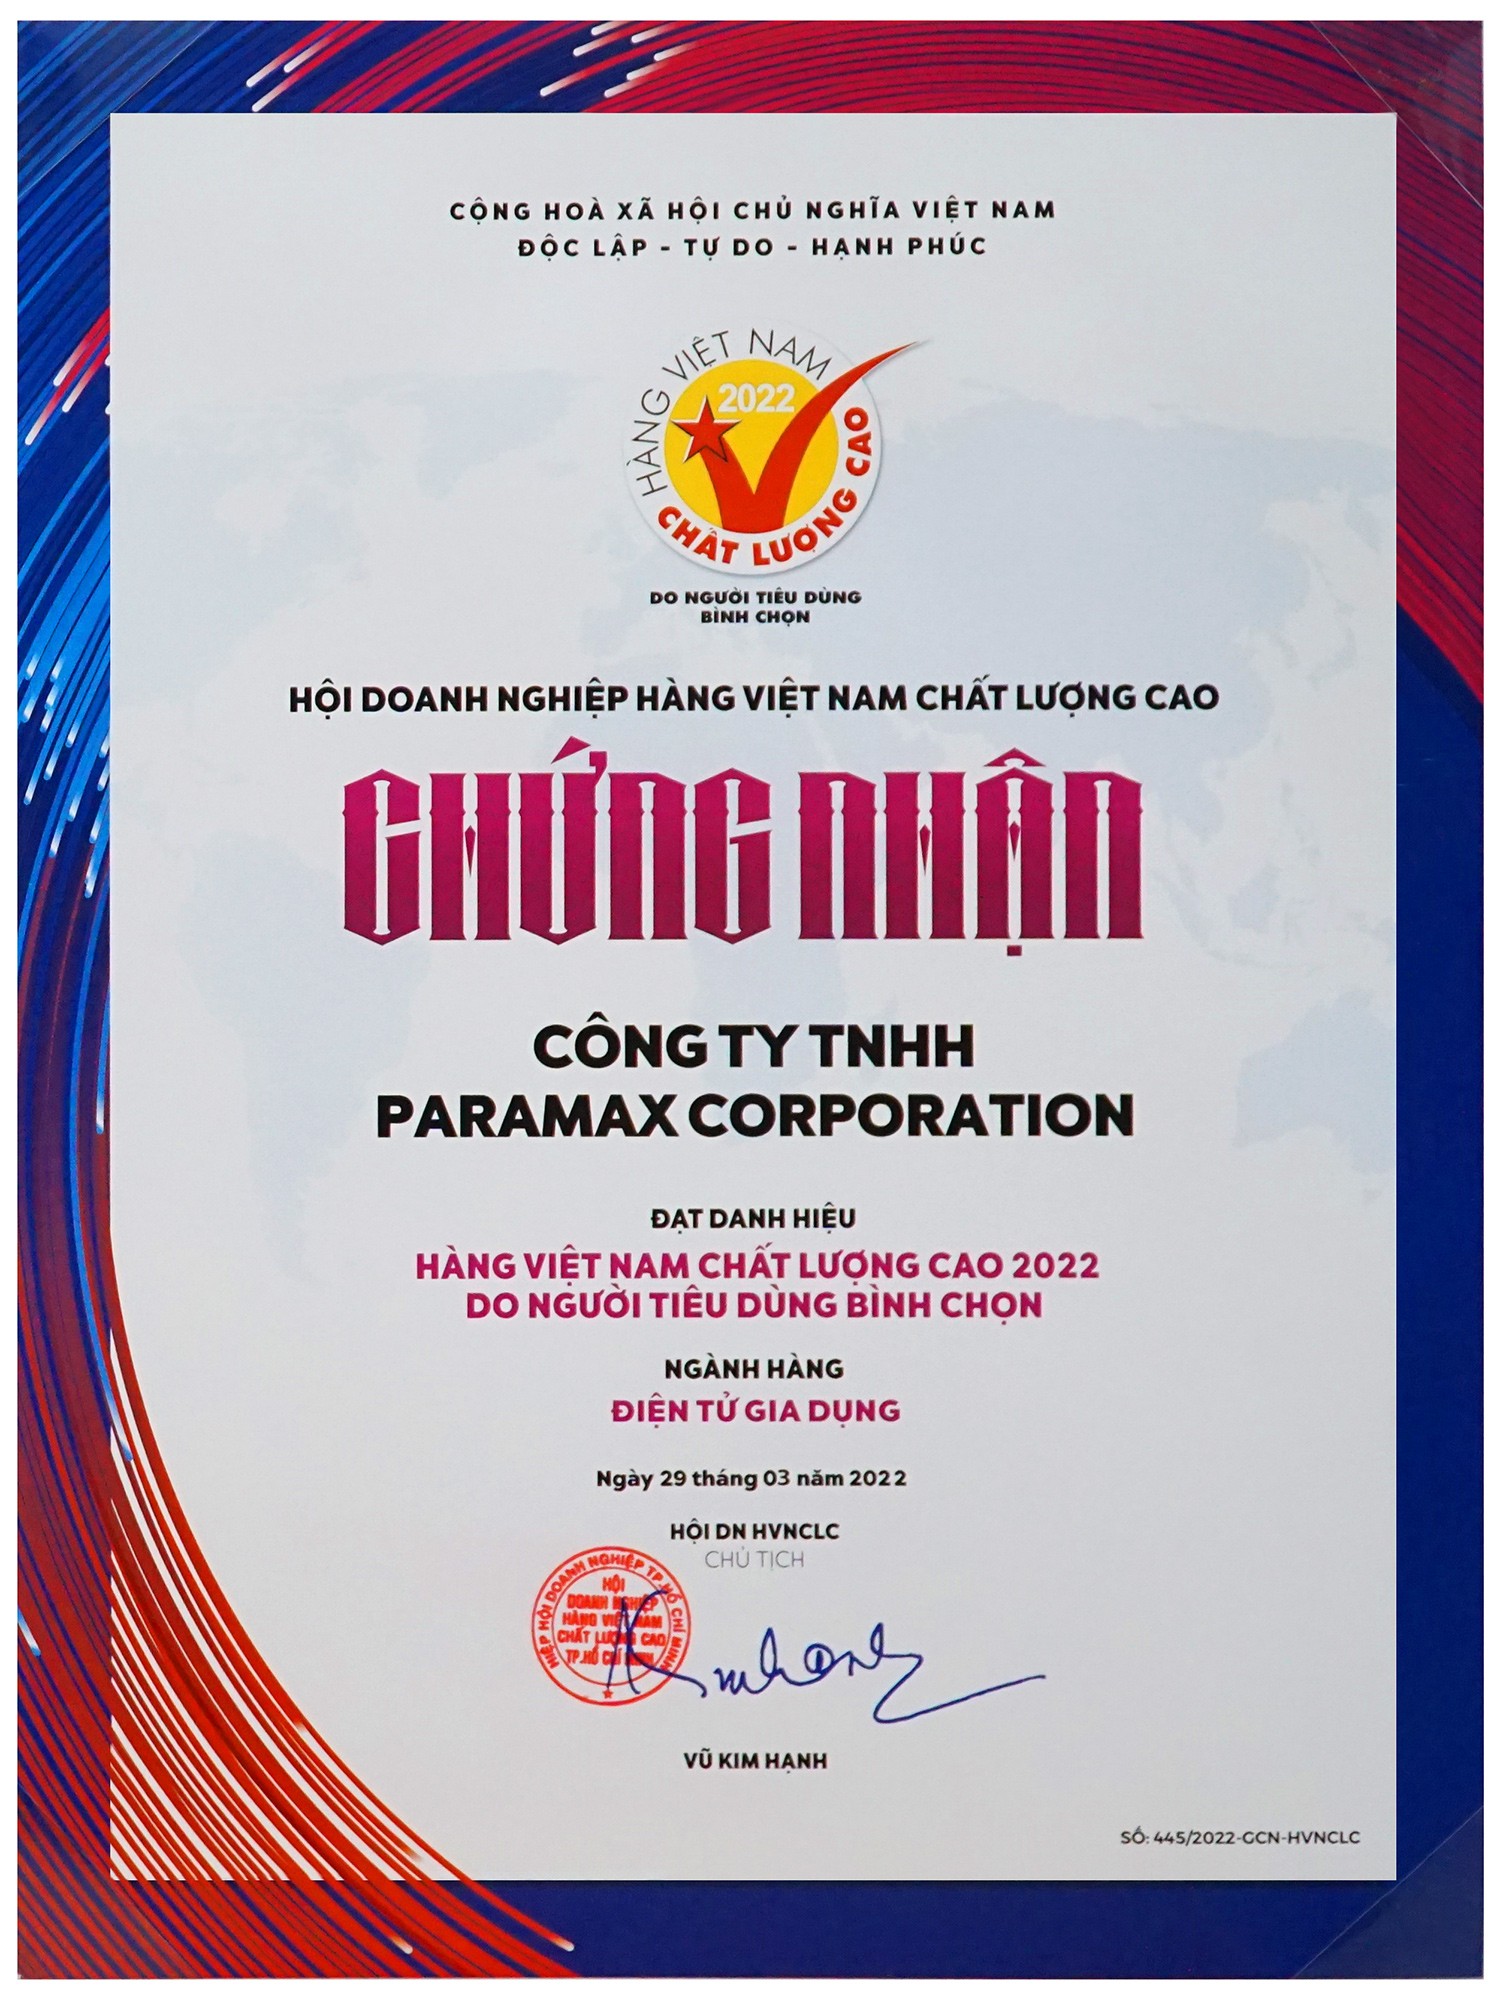 PARAMAX đạt danh hiệu hàng Việt Nam Chất lượng cao 2022